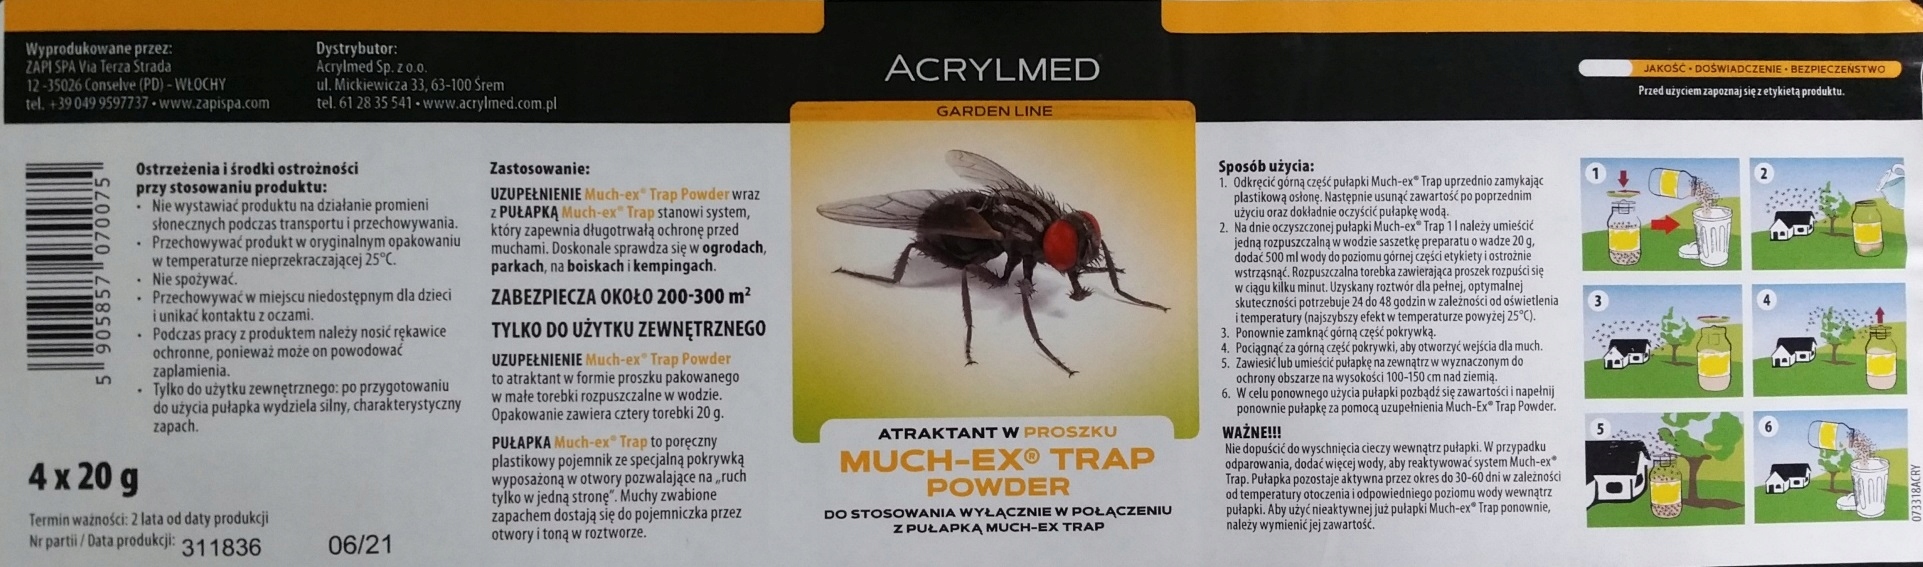 MUCH-EX trap professional powder 4x20 uzupełnienie Zastosowanie przeciwko kleszczom komarom muchom